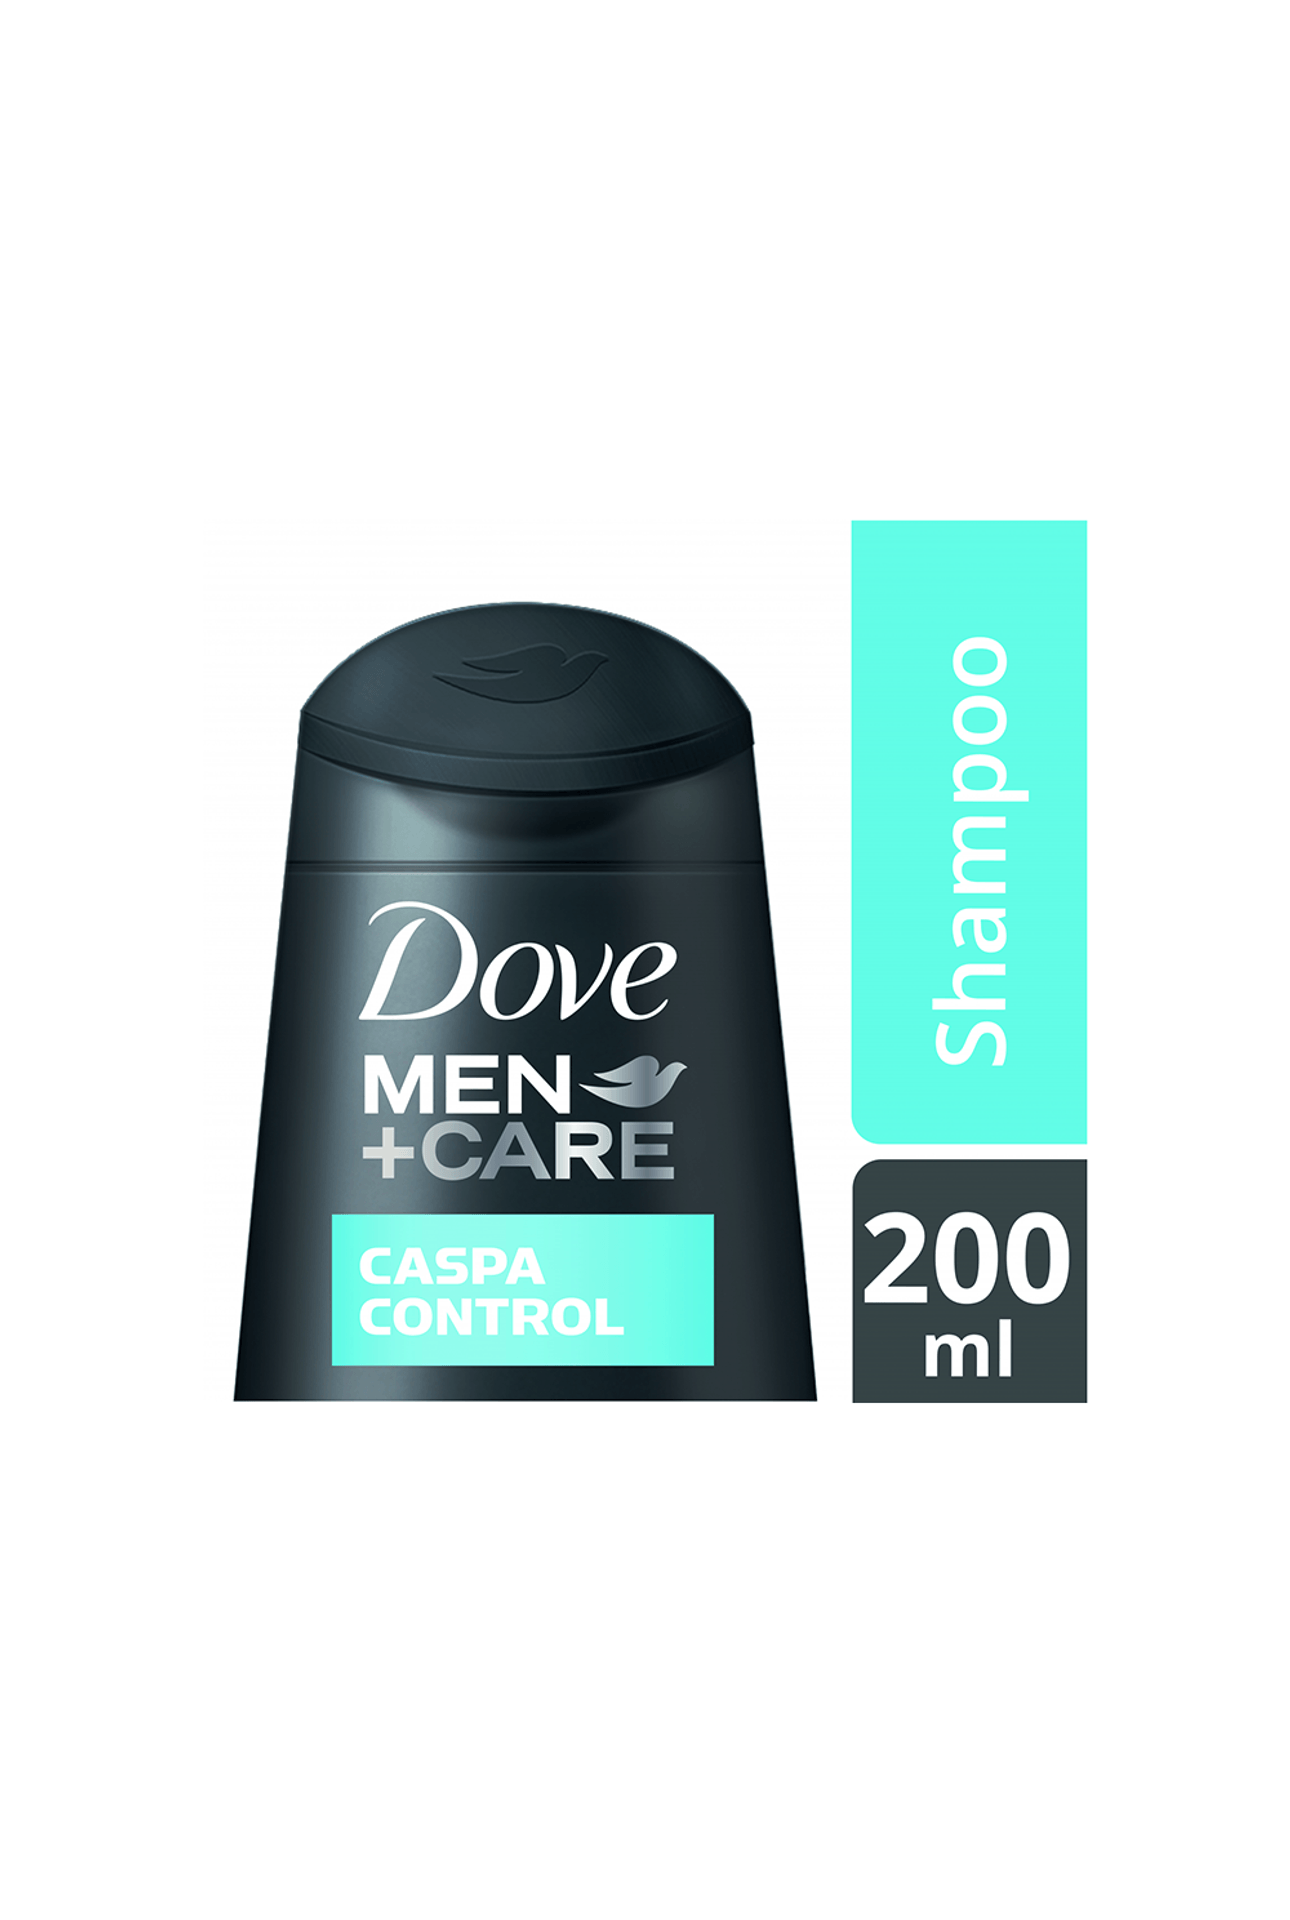 Dove-Shampoo-Dove-Men-Caspa-Control-x-200ml-7791293045535_img1